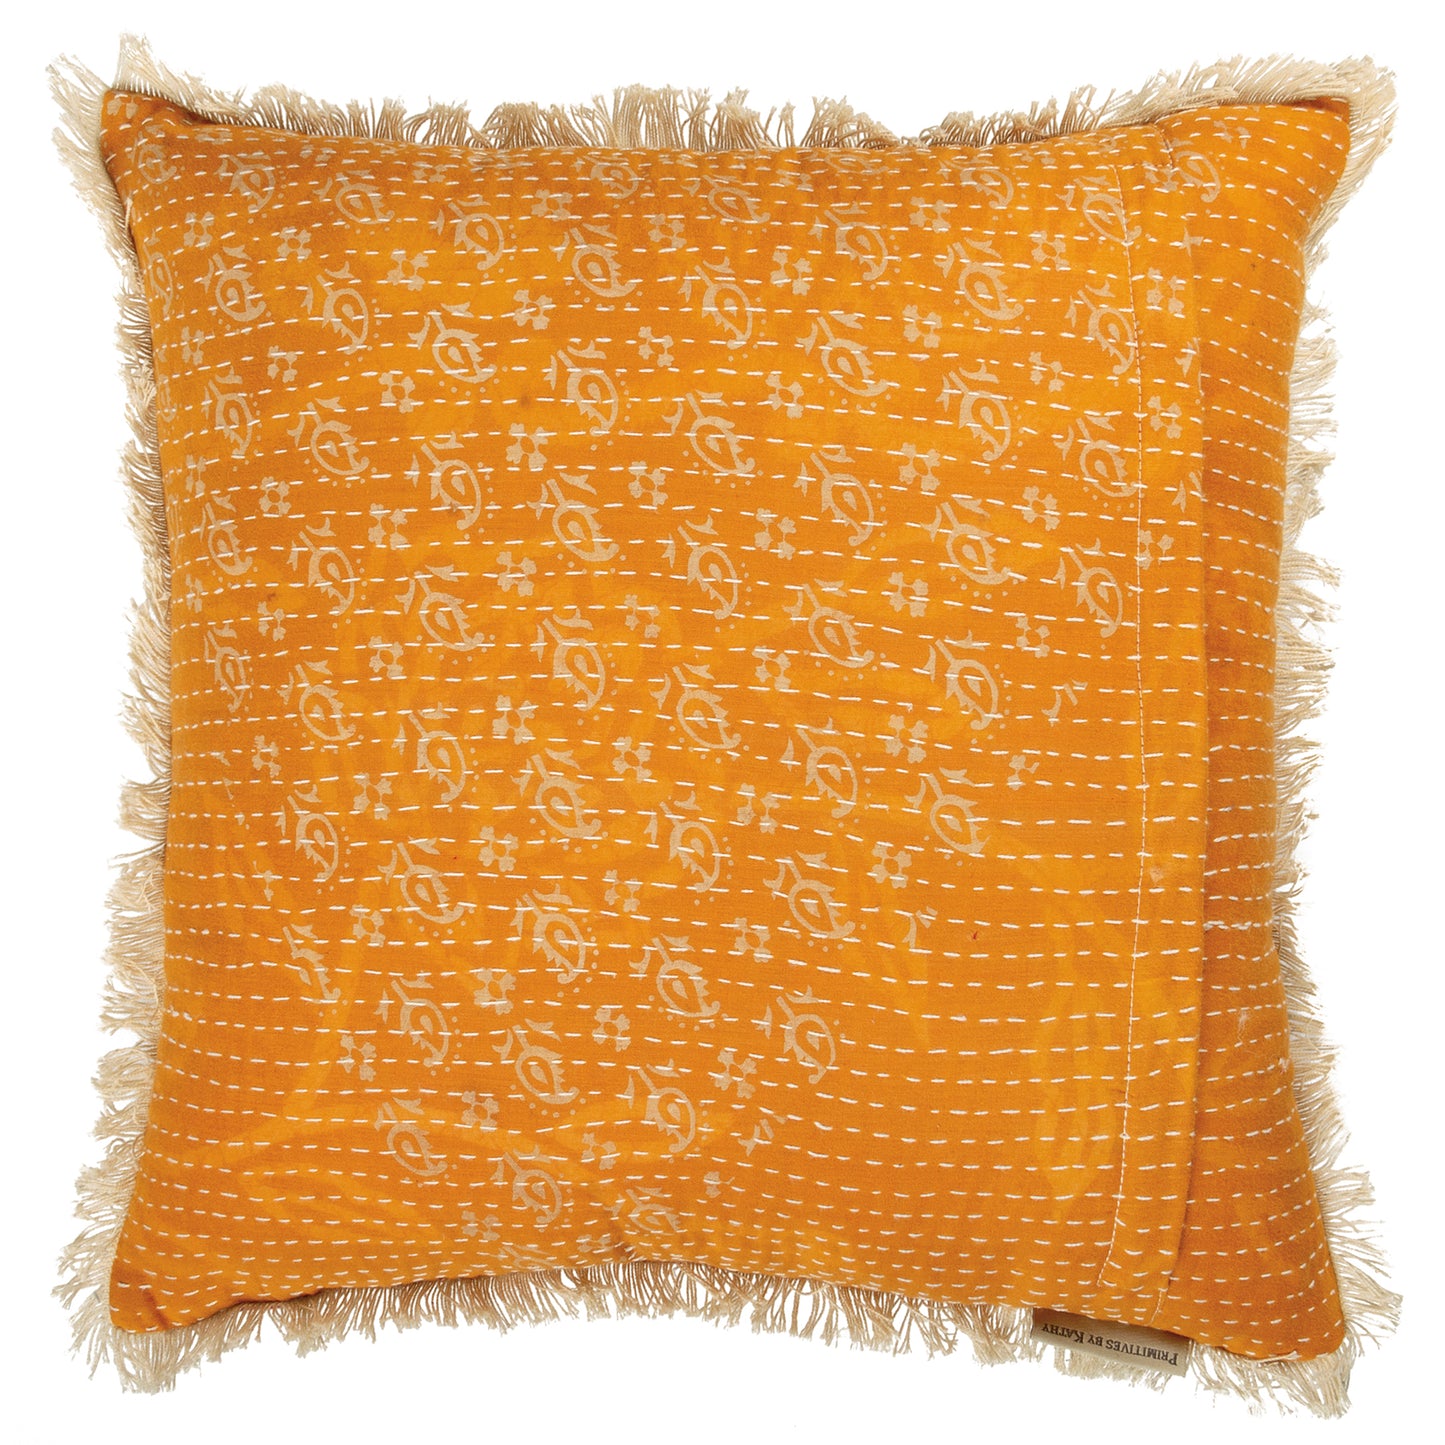 Kantha Pillow 16x16